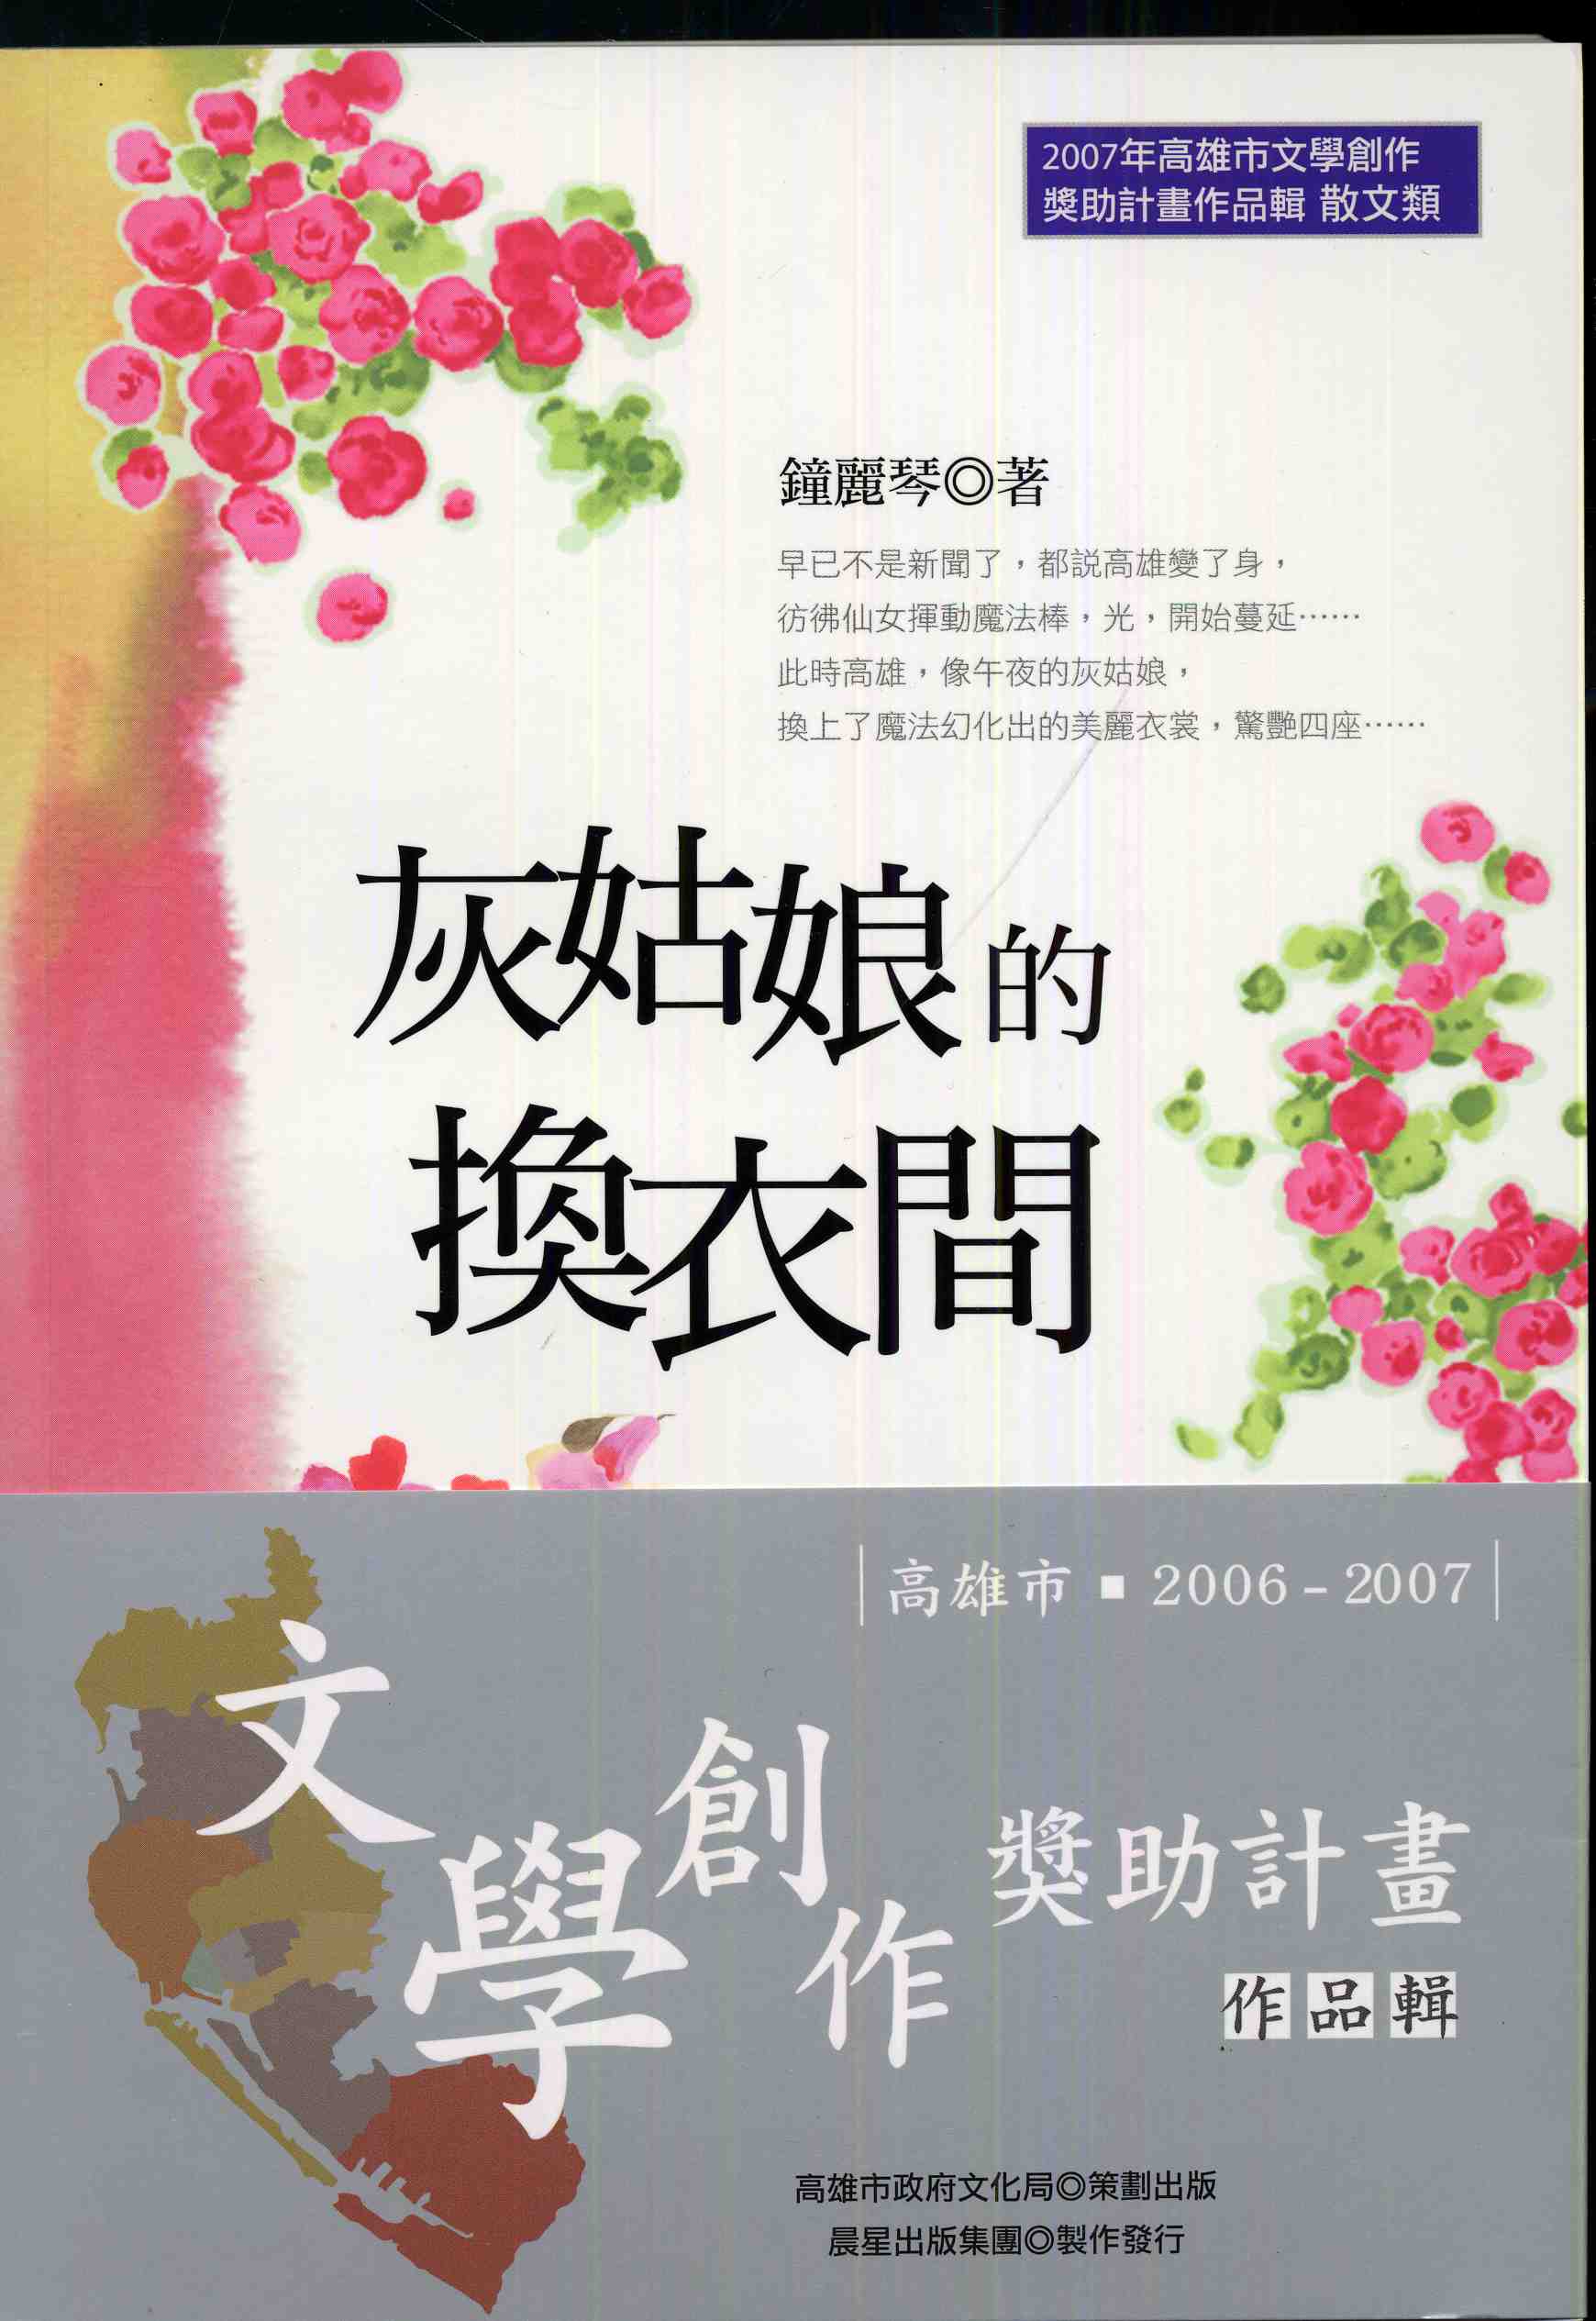 2006-7高雄文學創作獎助作品1-6(5)<灰姑娘的換衣間>鐘麗琴(2007)